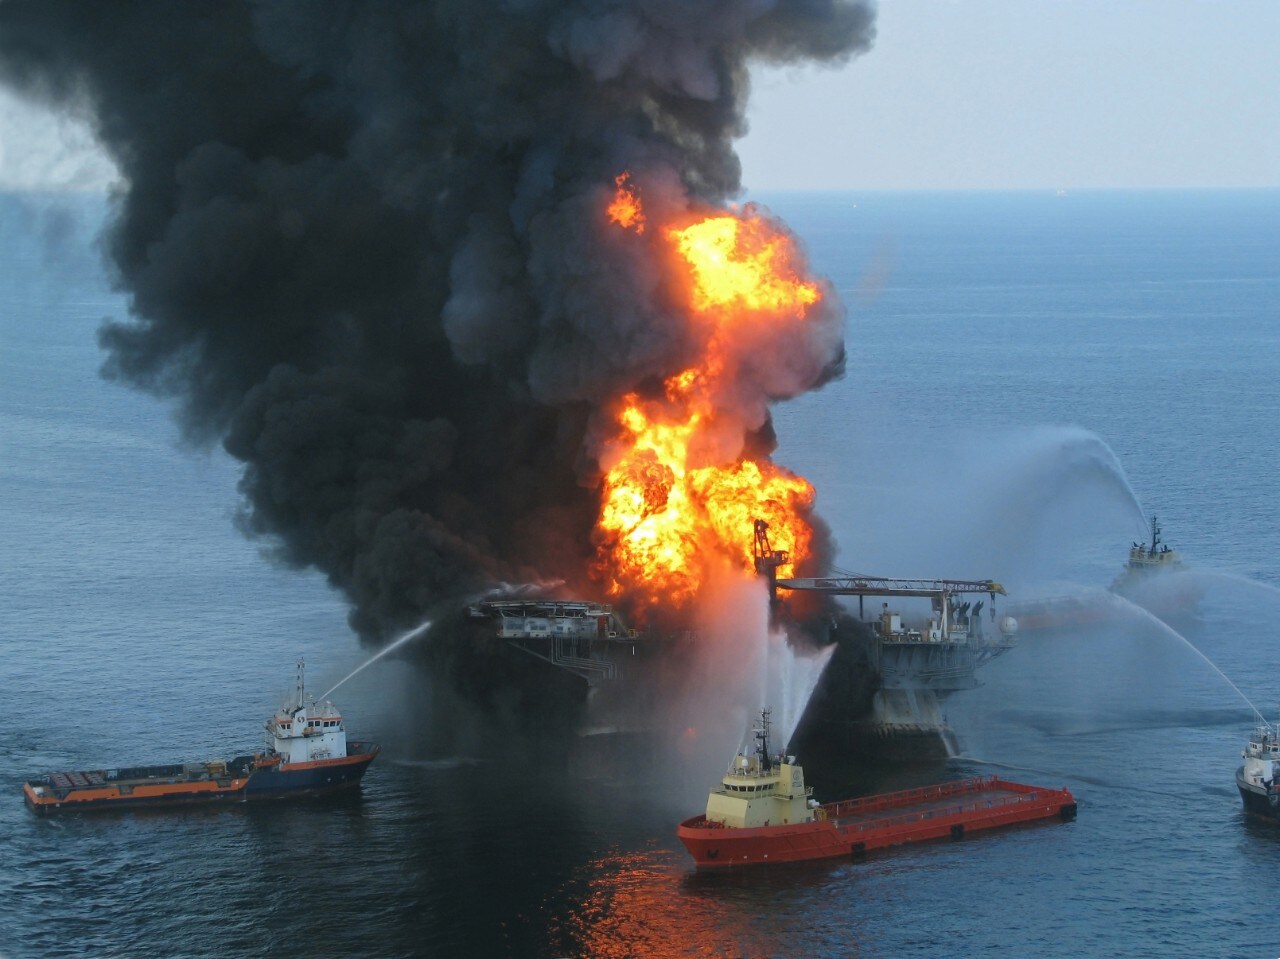 Deepwater Horizon oil spill, Mexico Gulf, 2010